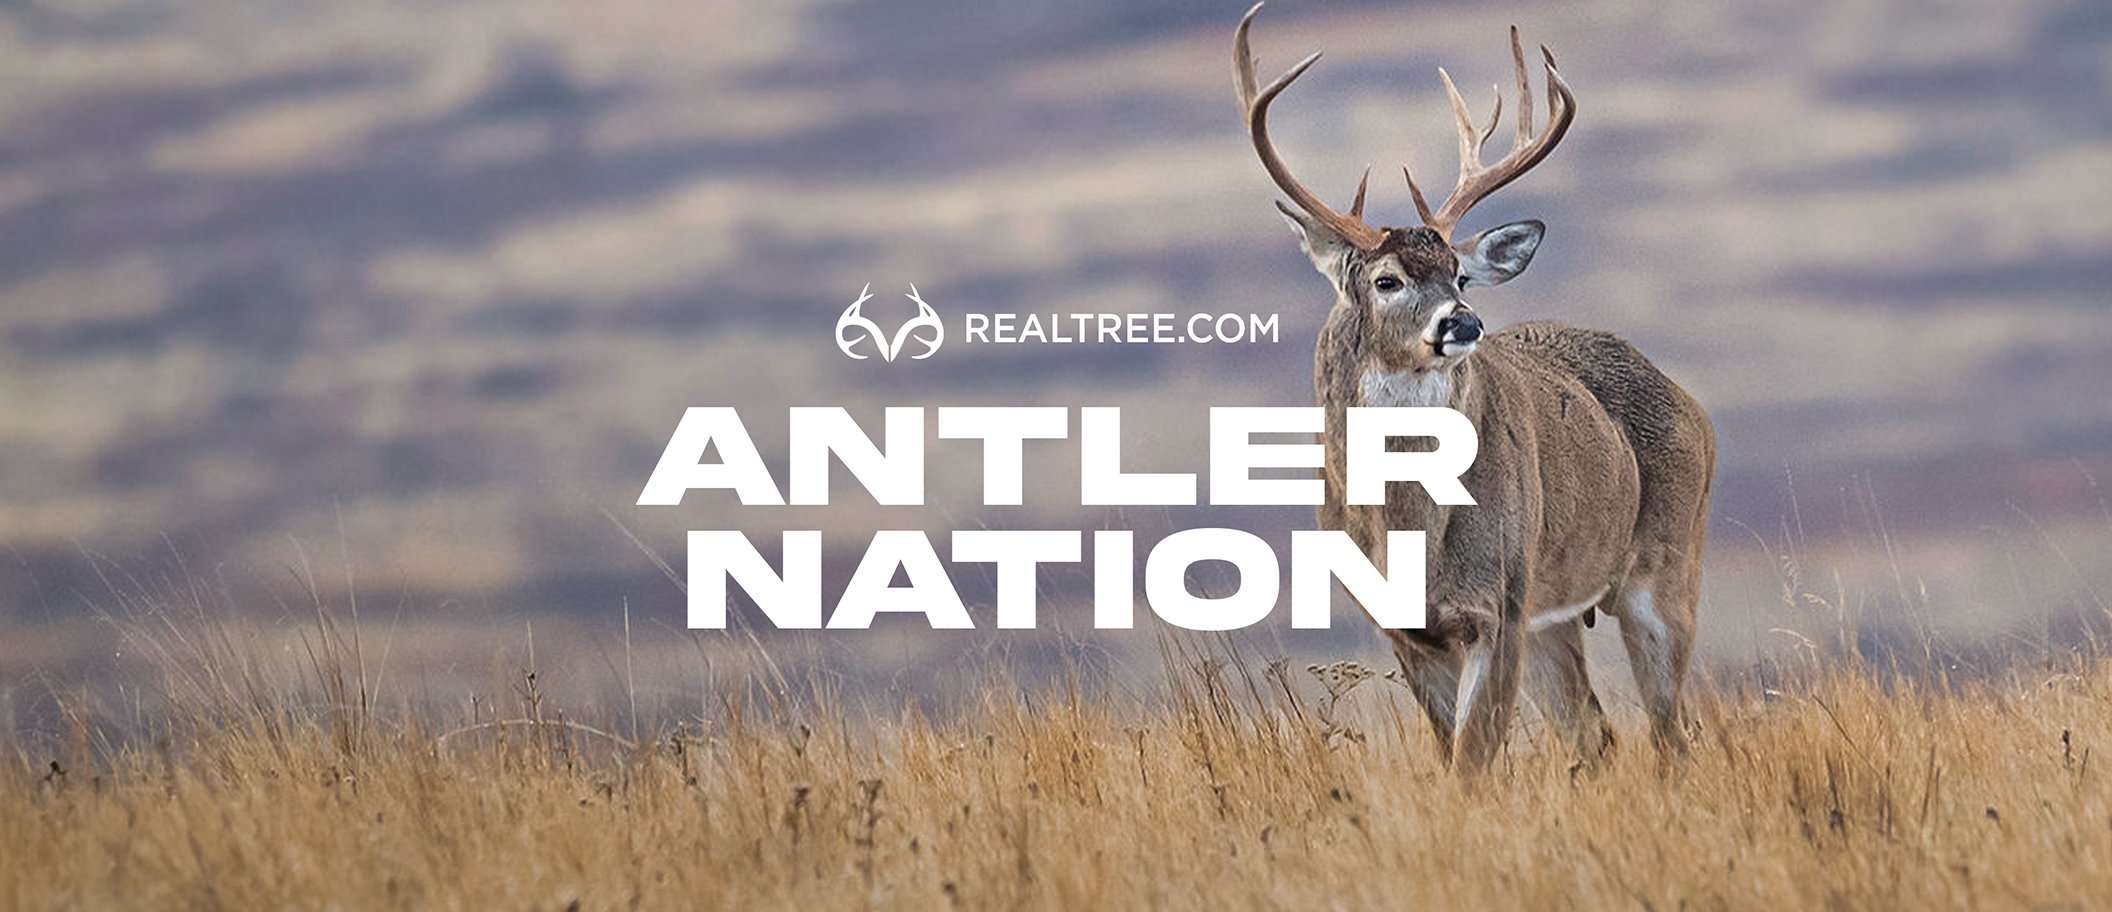 DeerHunting - Antler Nation